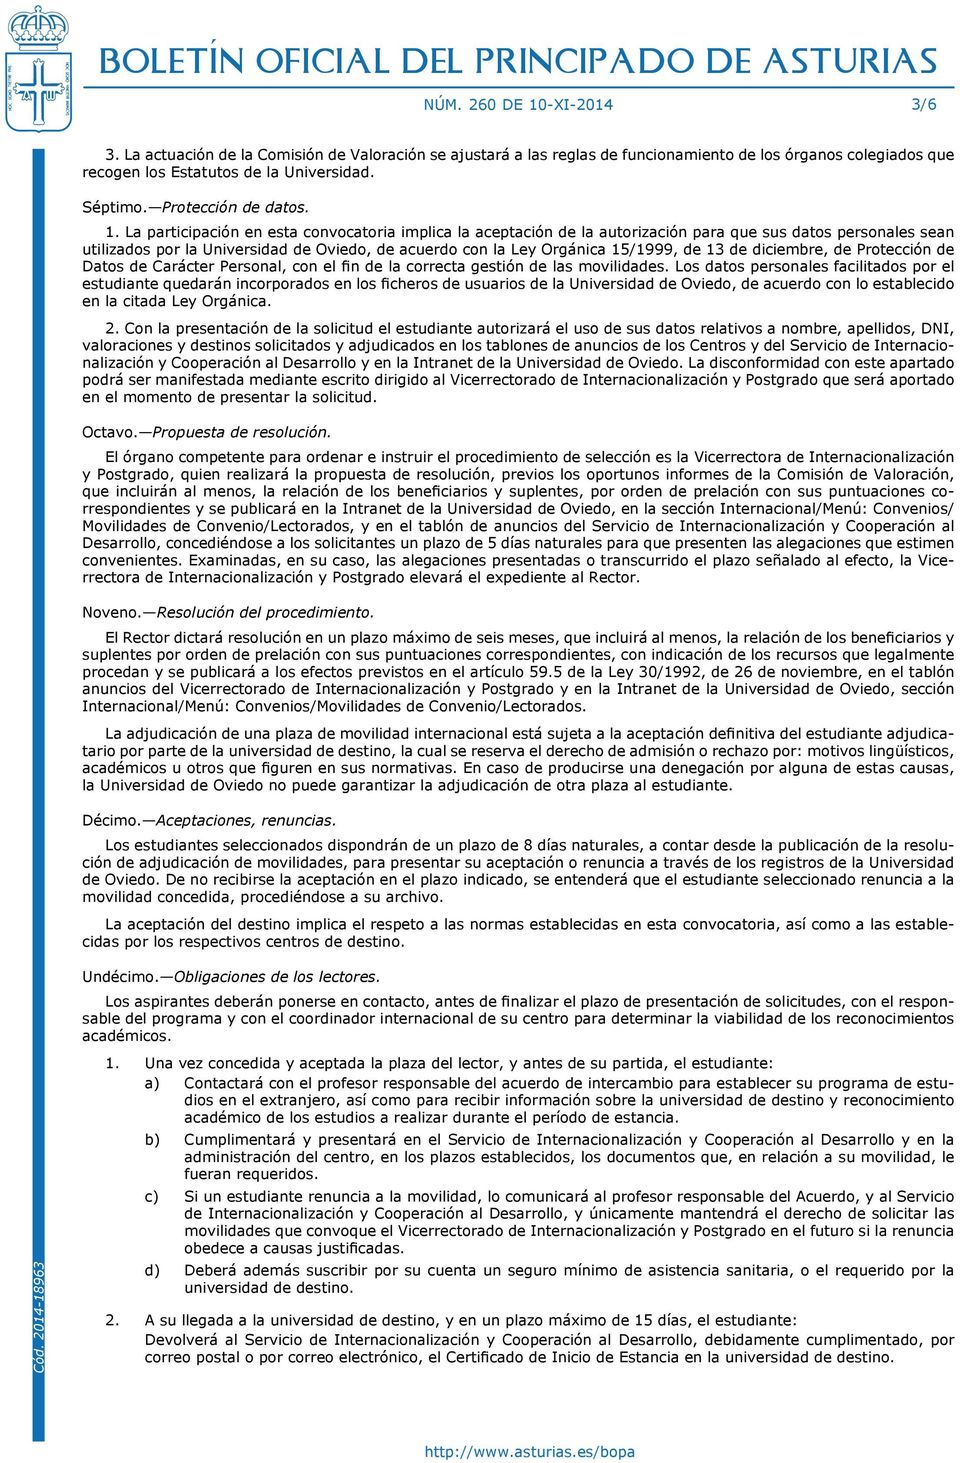 La participación en esta convocatoria implica la aceptación de la autorización para que sus datos personales sean utilizados por la Universidad de Oviedo, de acuerdo con la Ley Orgánica 15/1999, de